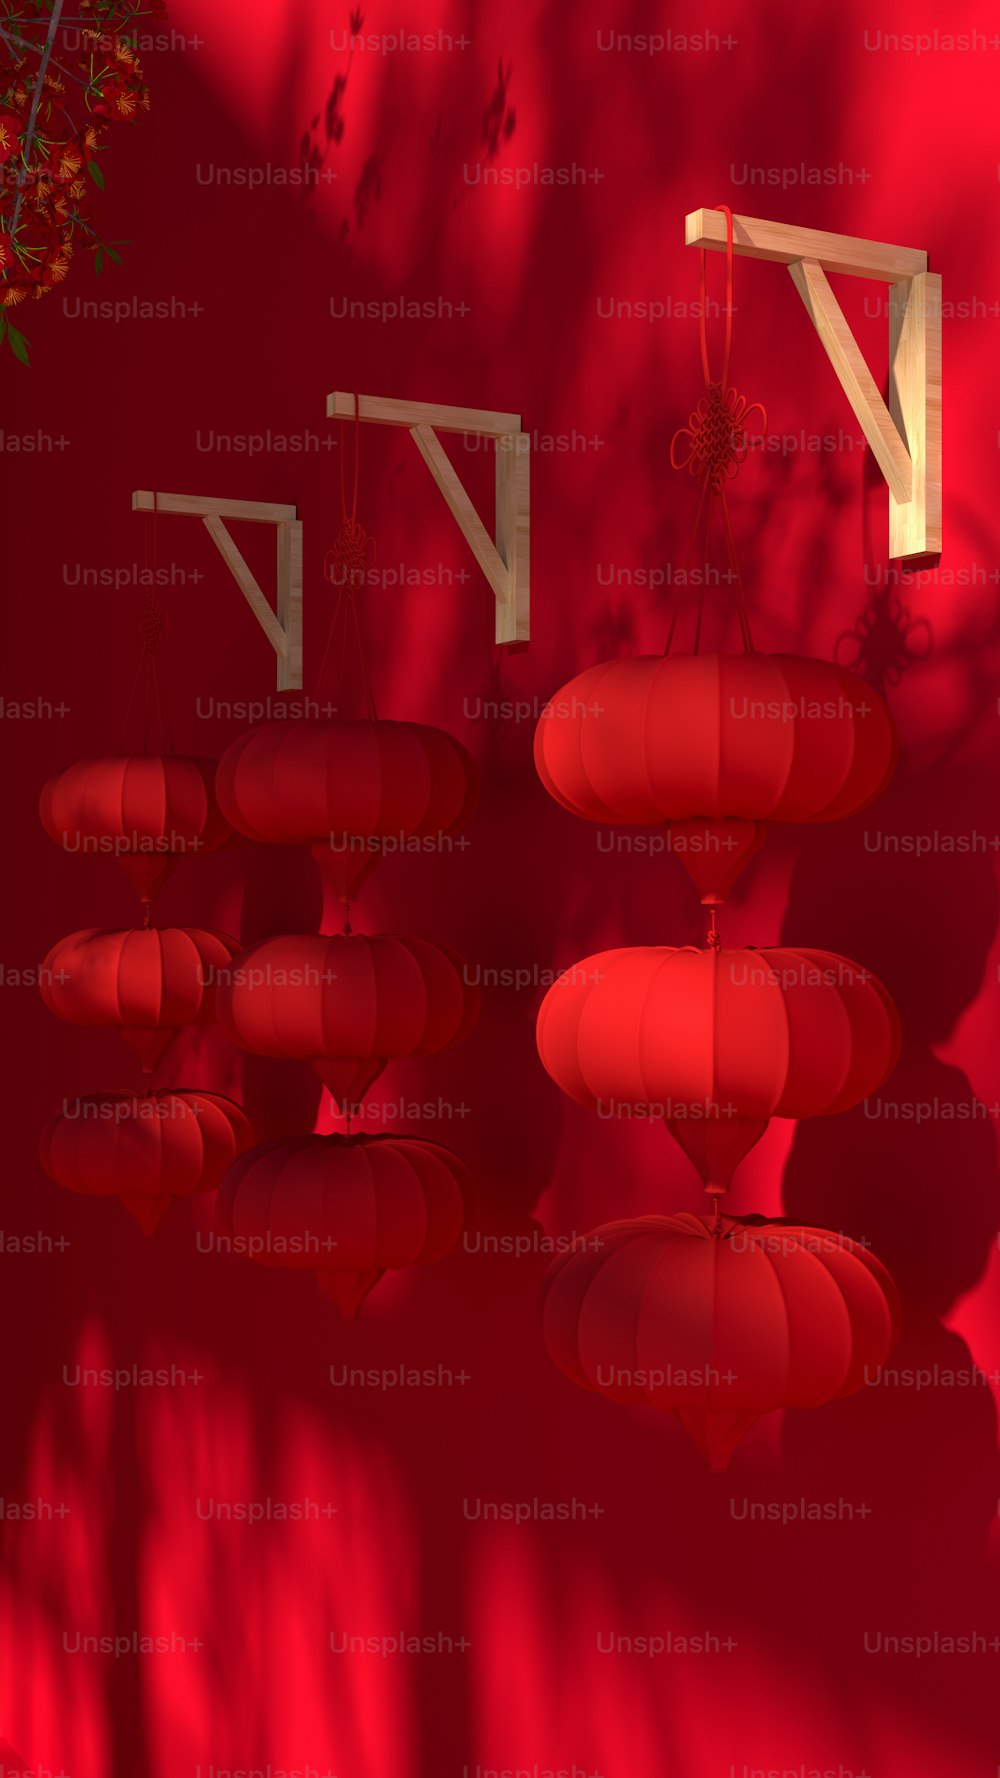 Un gruppo di lanterne rosse appese a un muro rosso